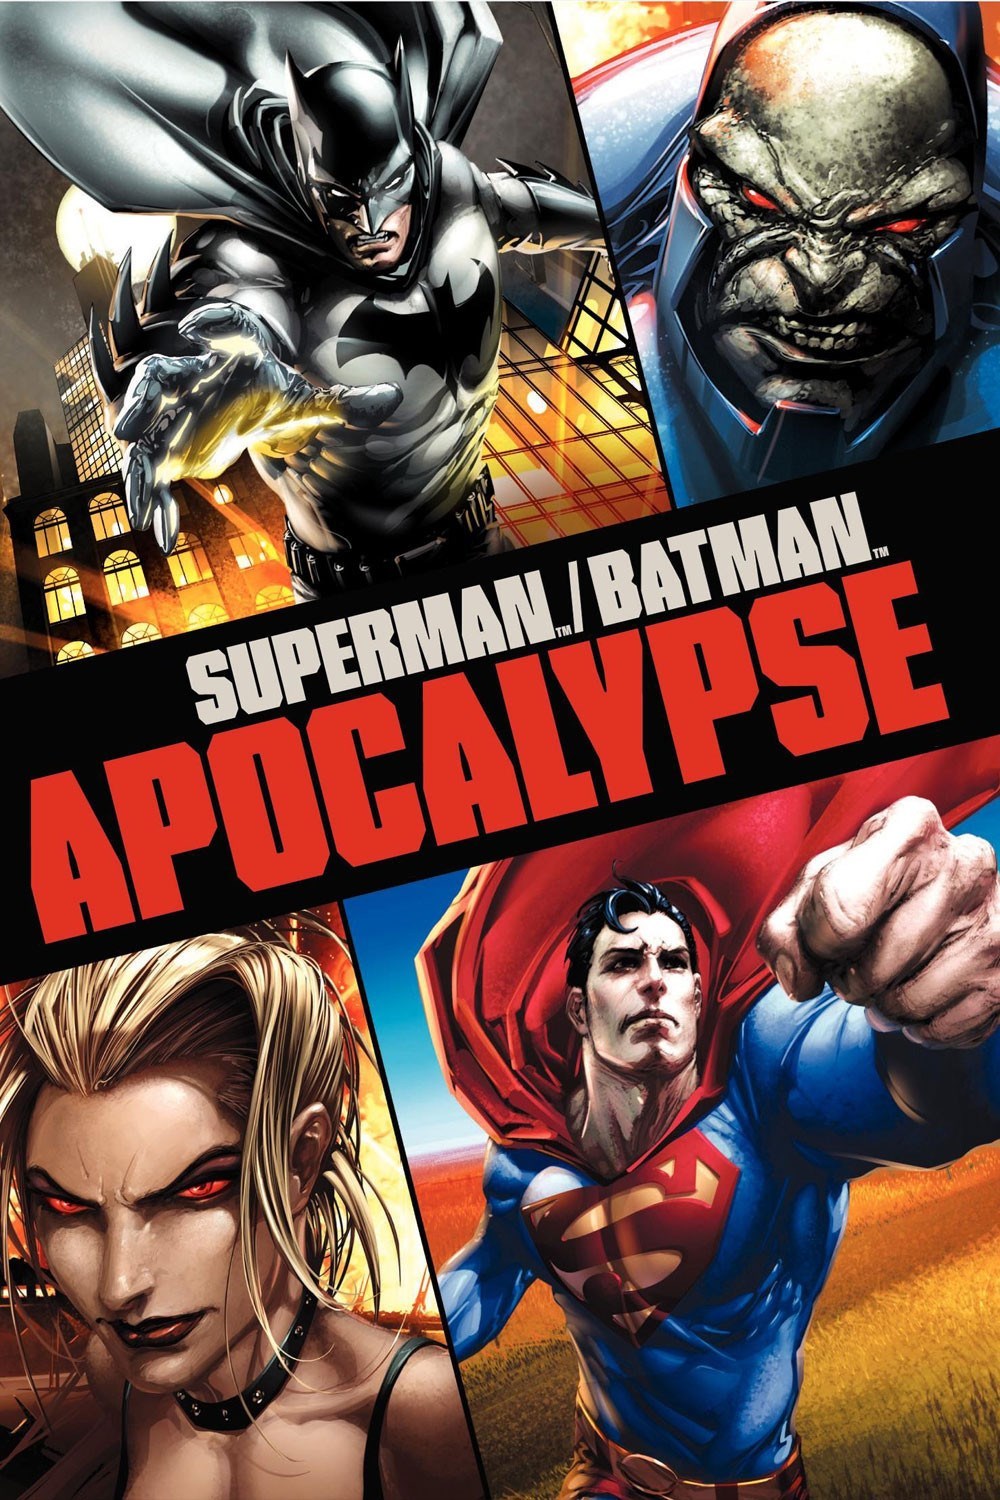 SUPERMAN BATMAN APOCALYPSE (2010) ซูเปอร์แมน กับ แบทแมน ศึกวันล้างโลก พากย์ไทย